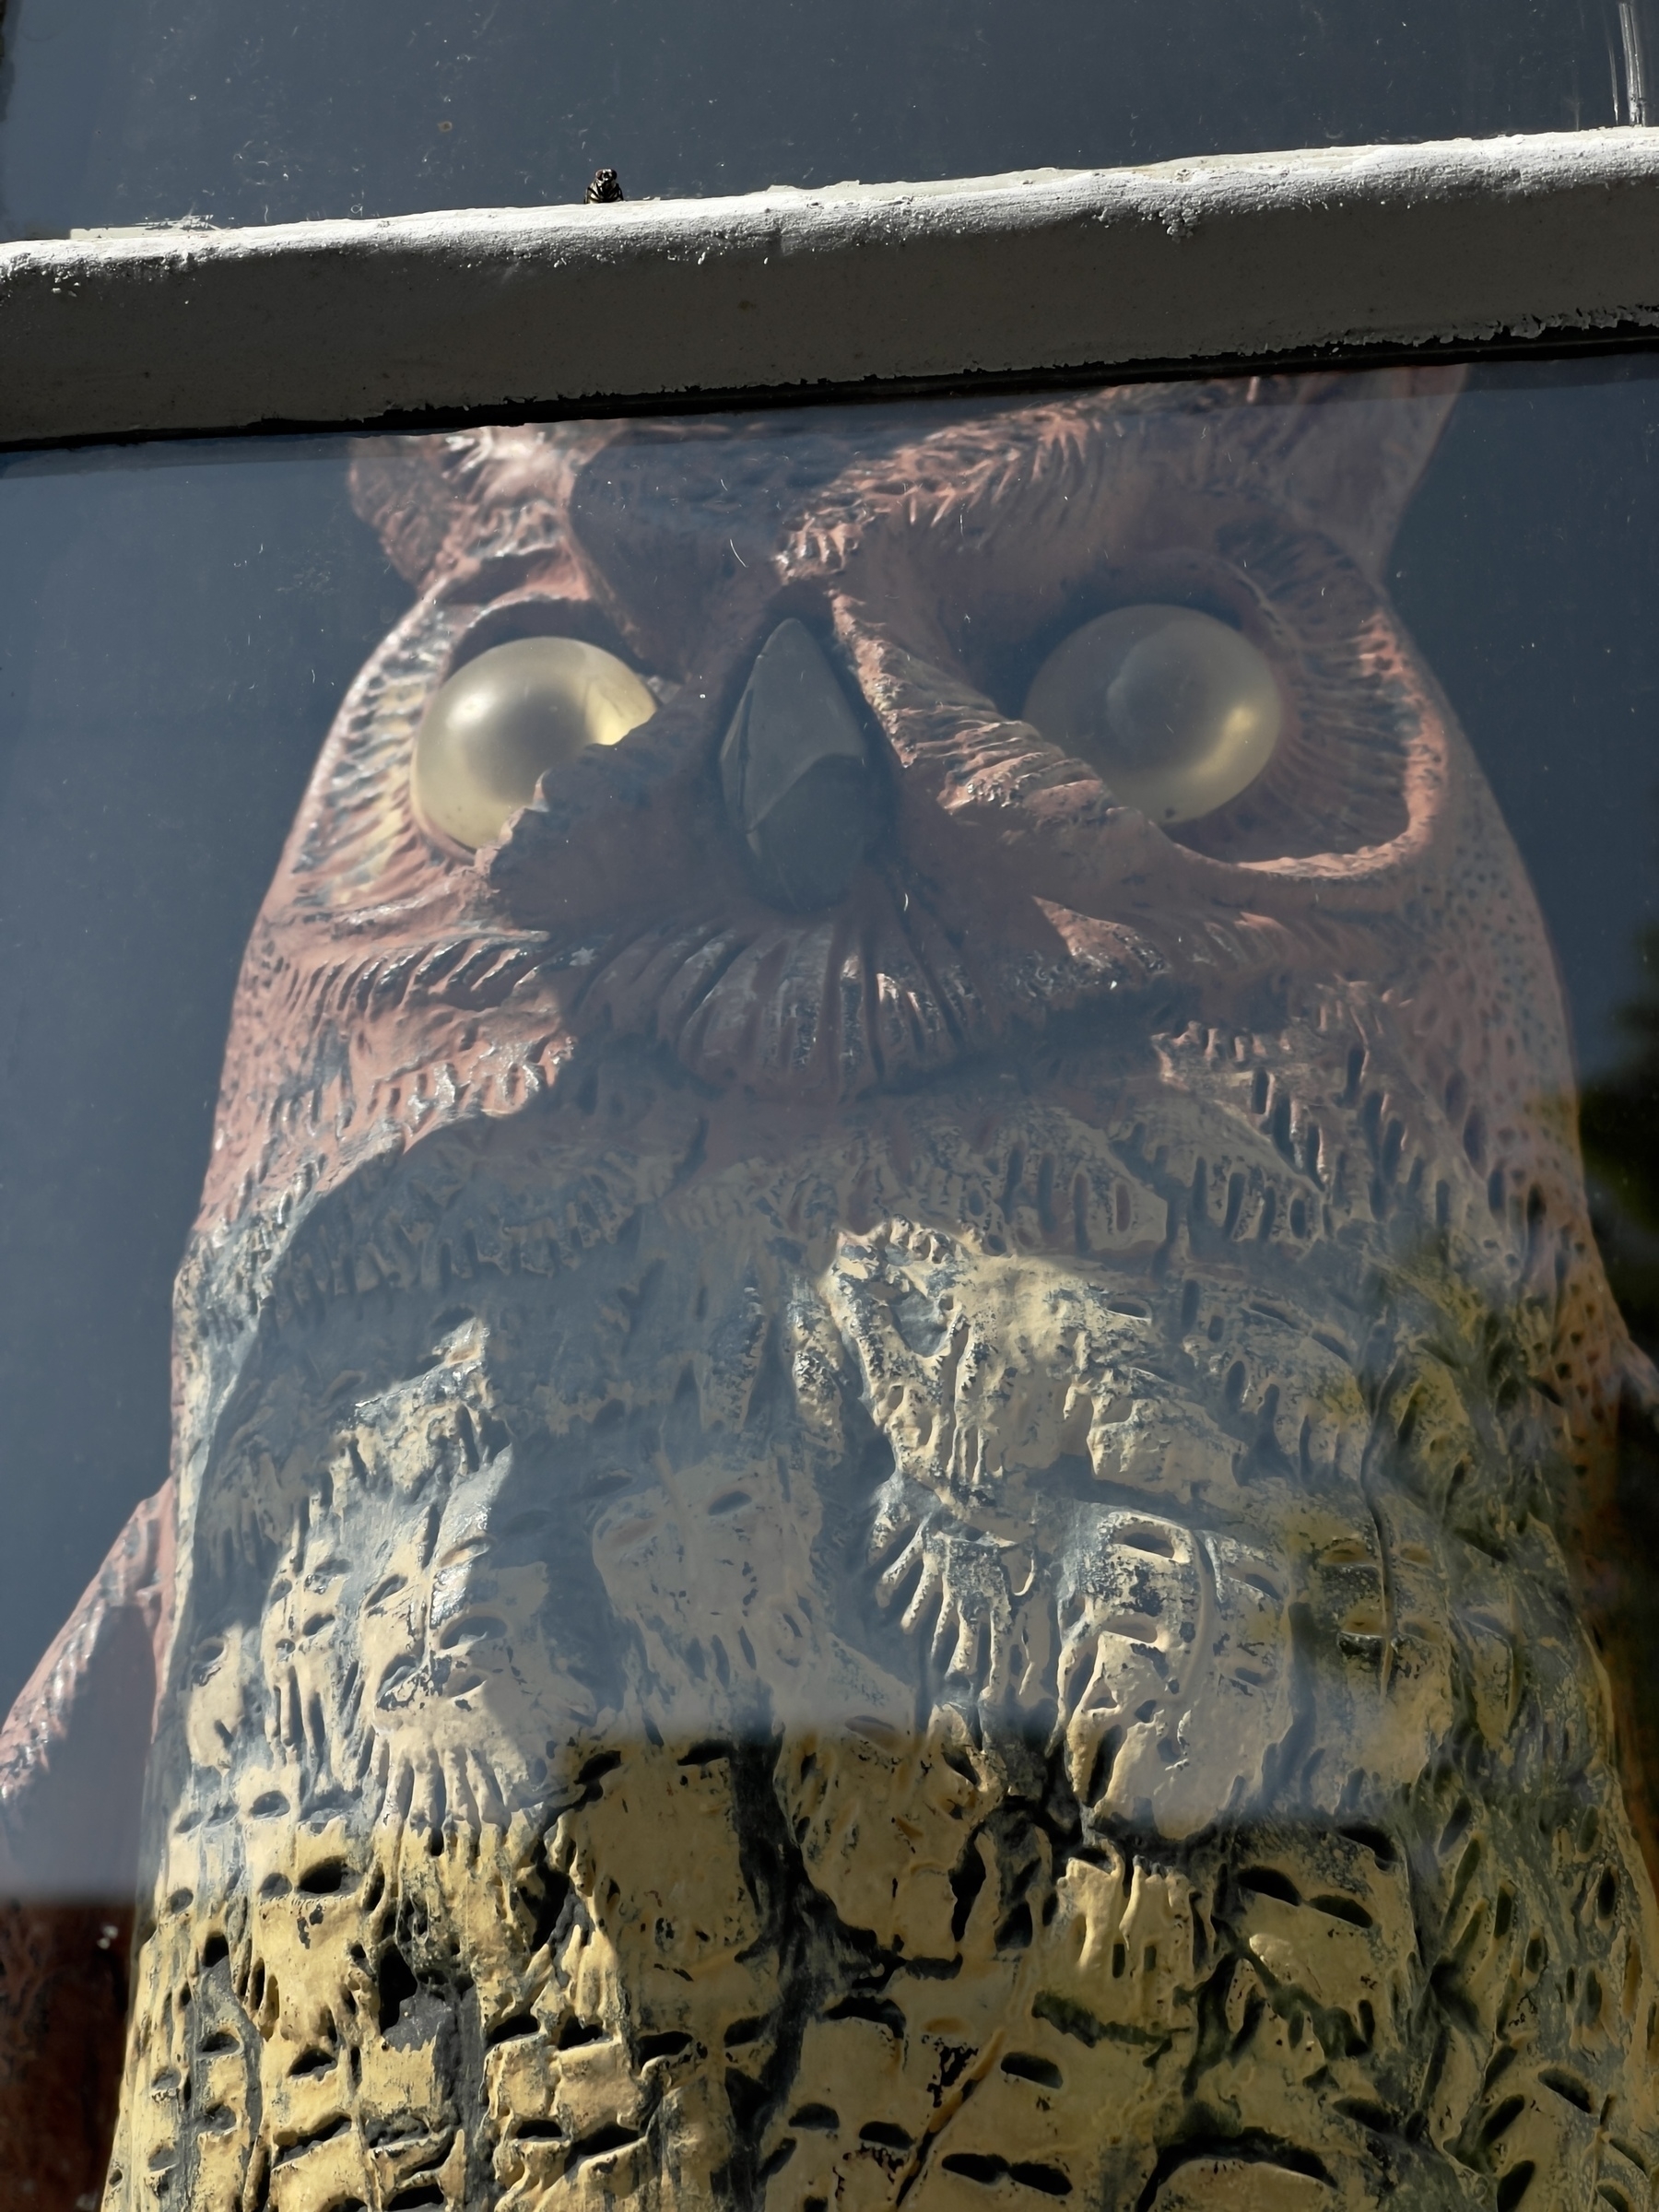 Owl statue in shop window.